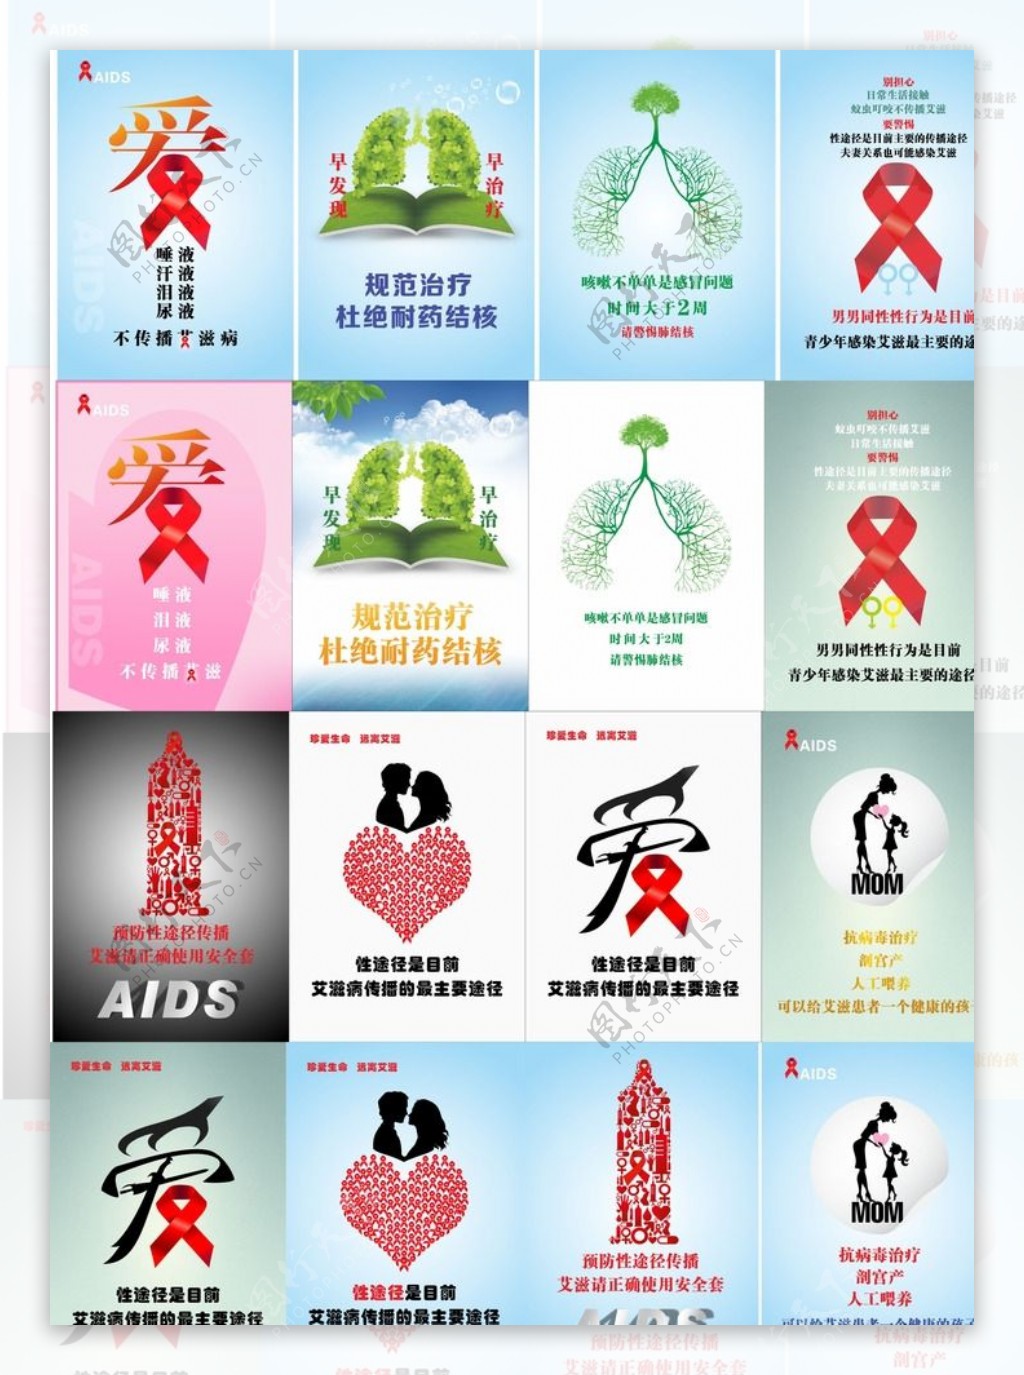 艾滋海报图片